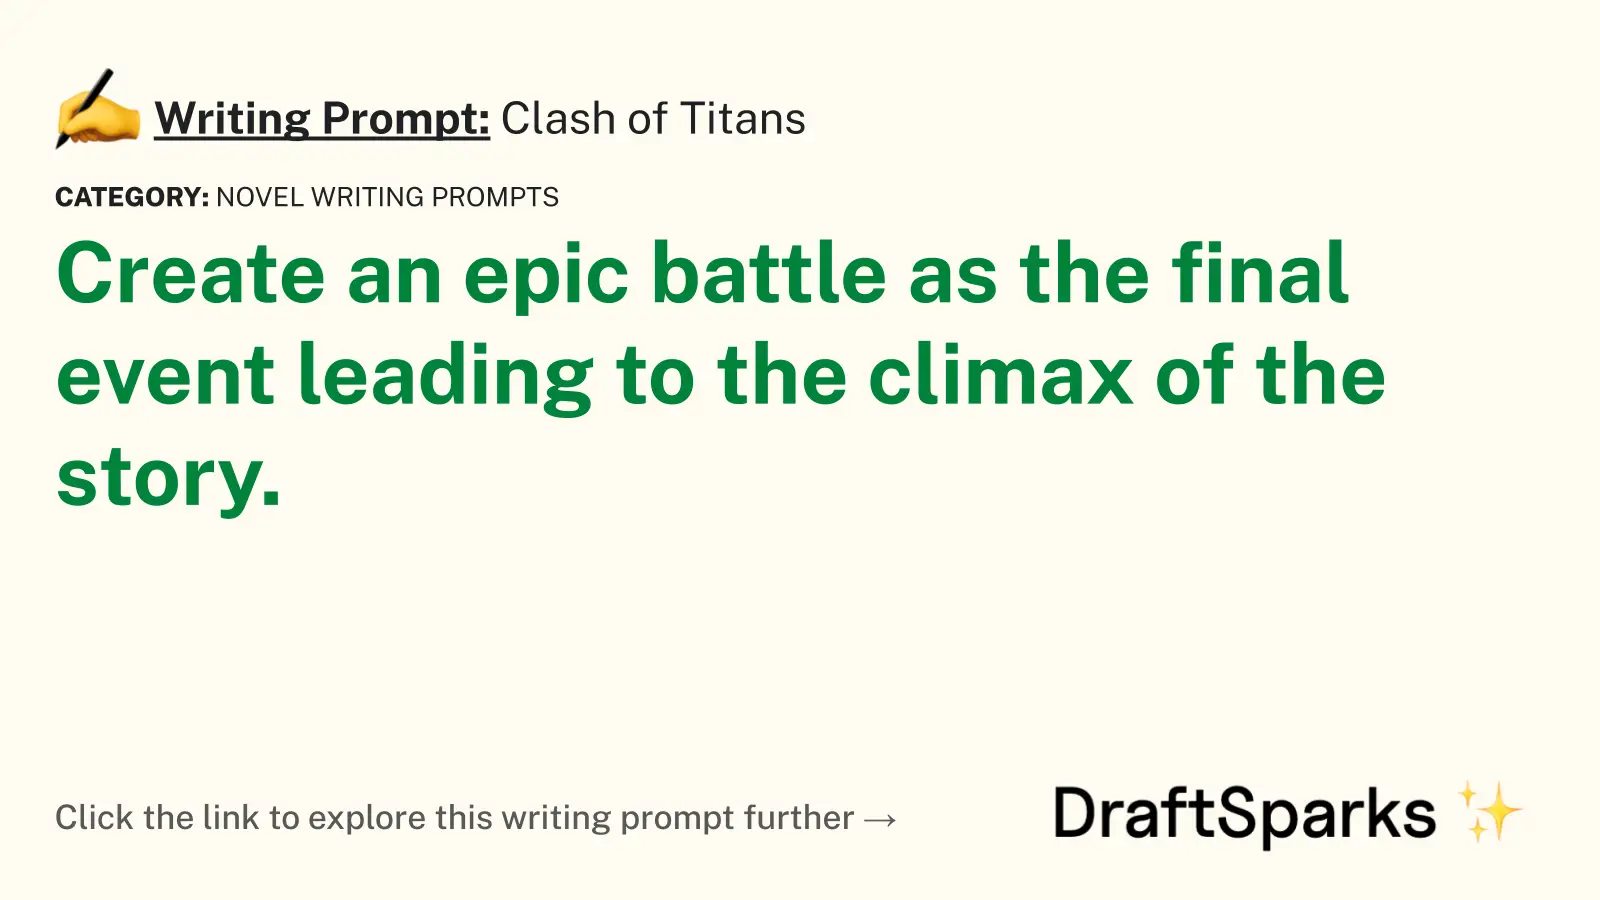 Clash of Titans